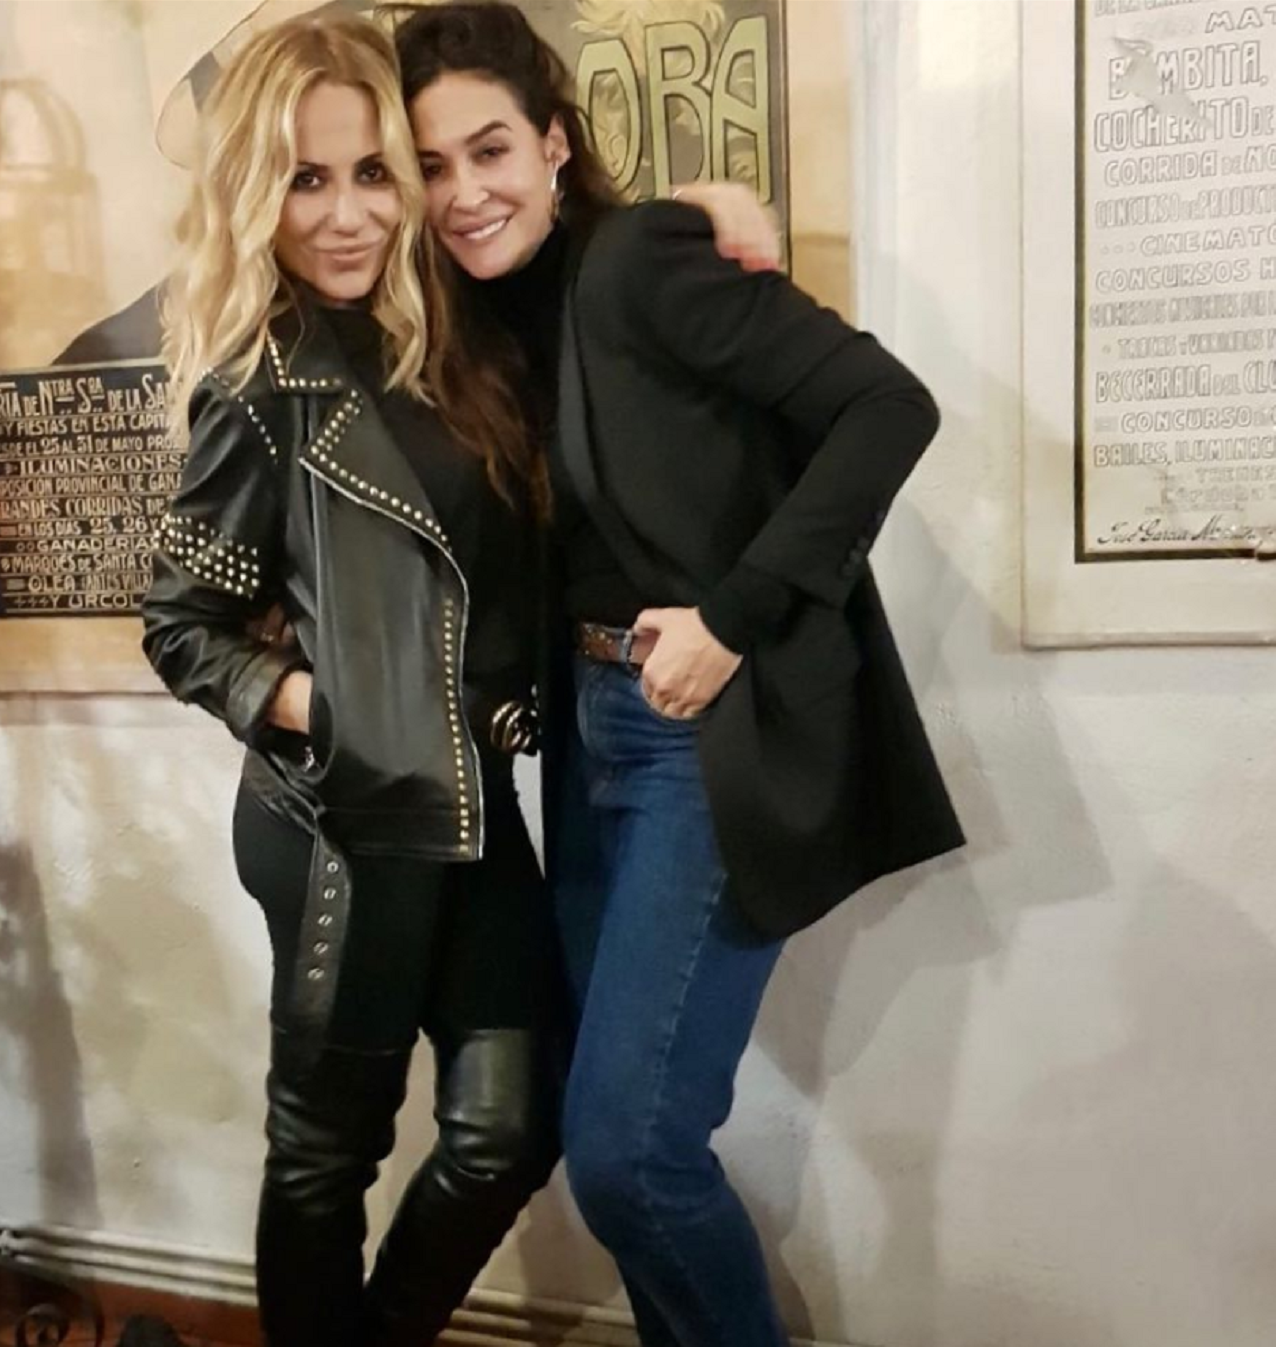 L’aniversari de Vicky Martin Berrocal: 24.000 € i Marta Sánchez cantant l’himne